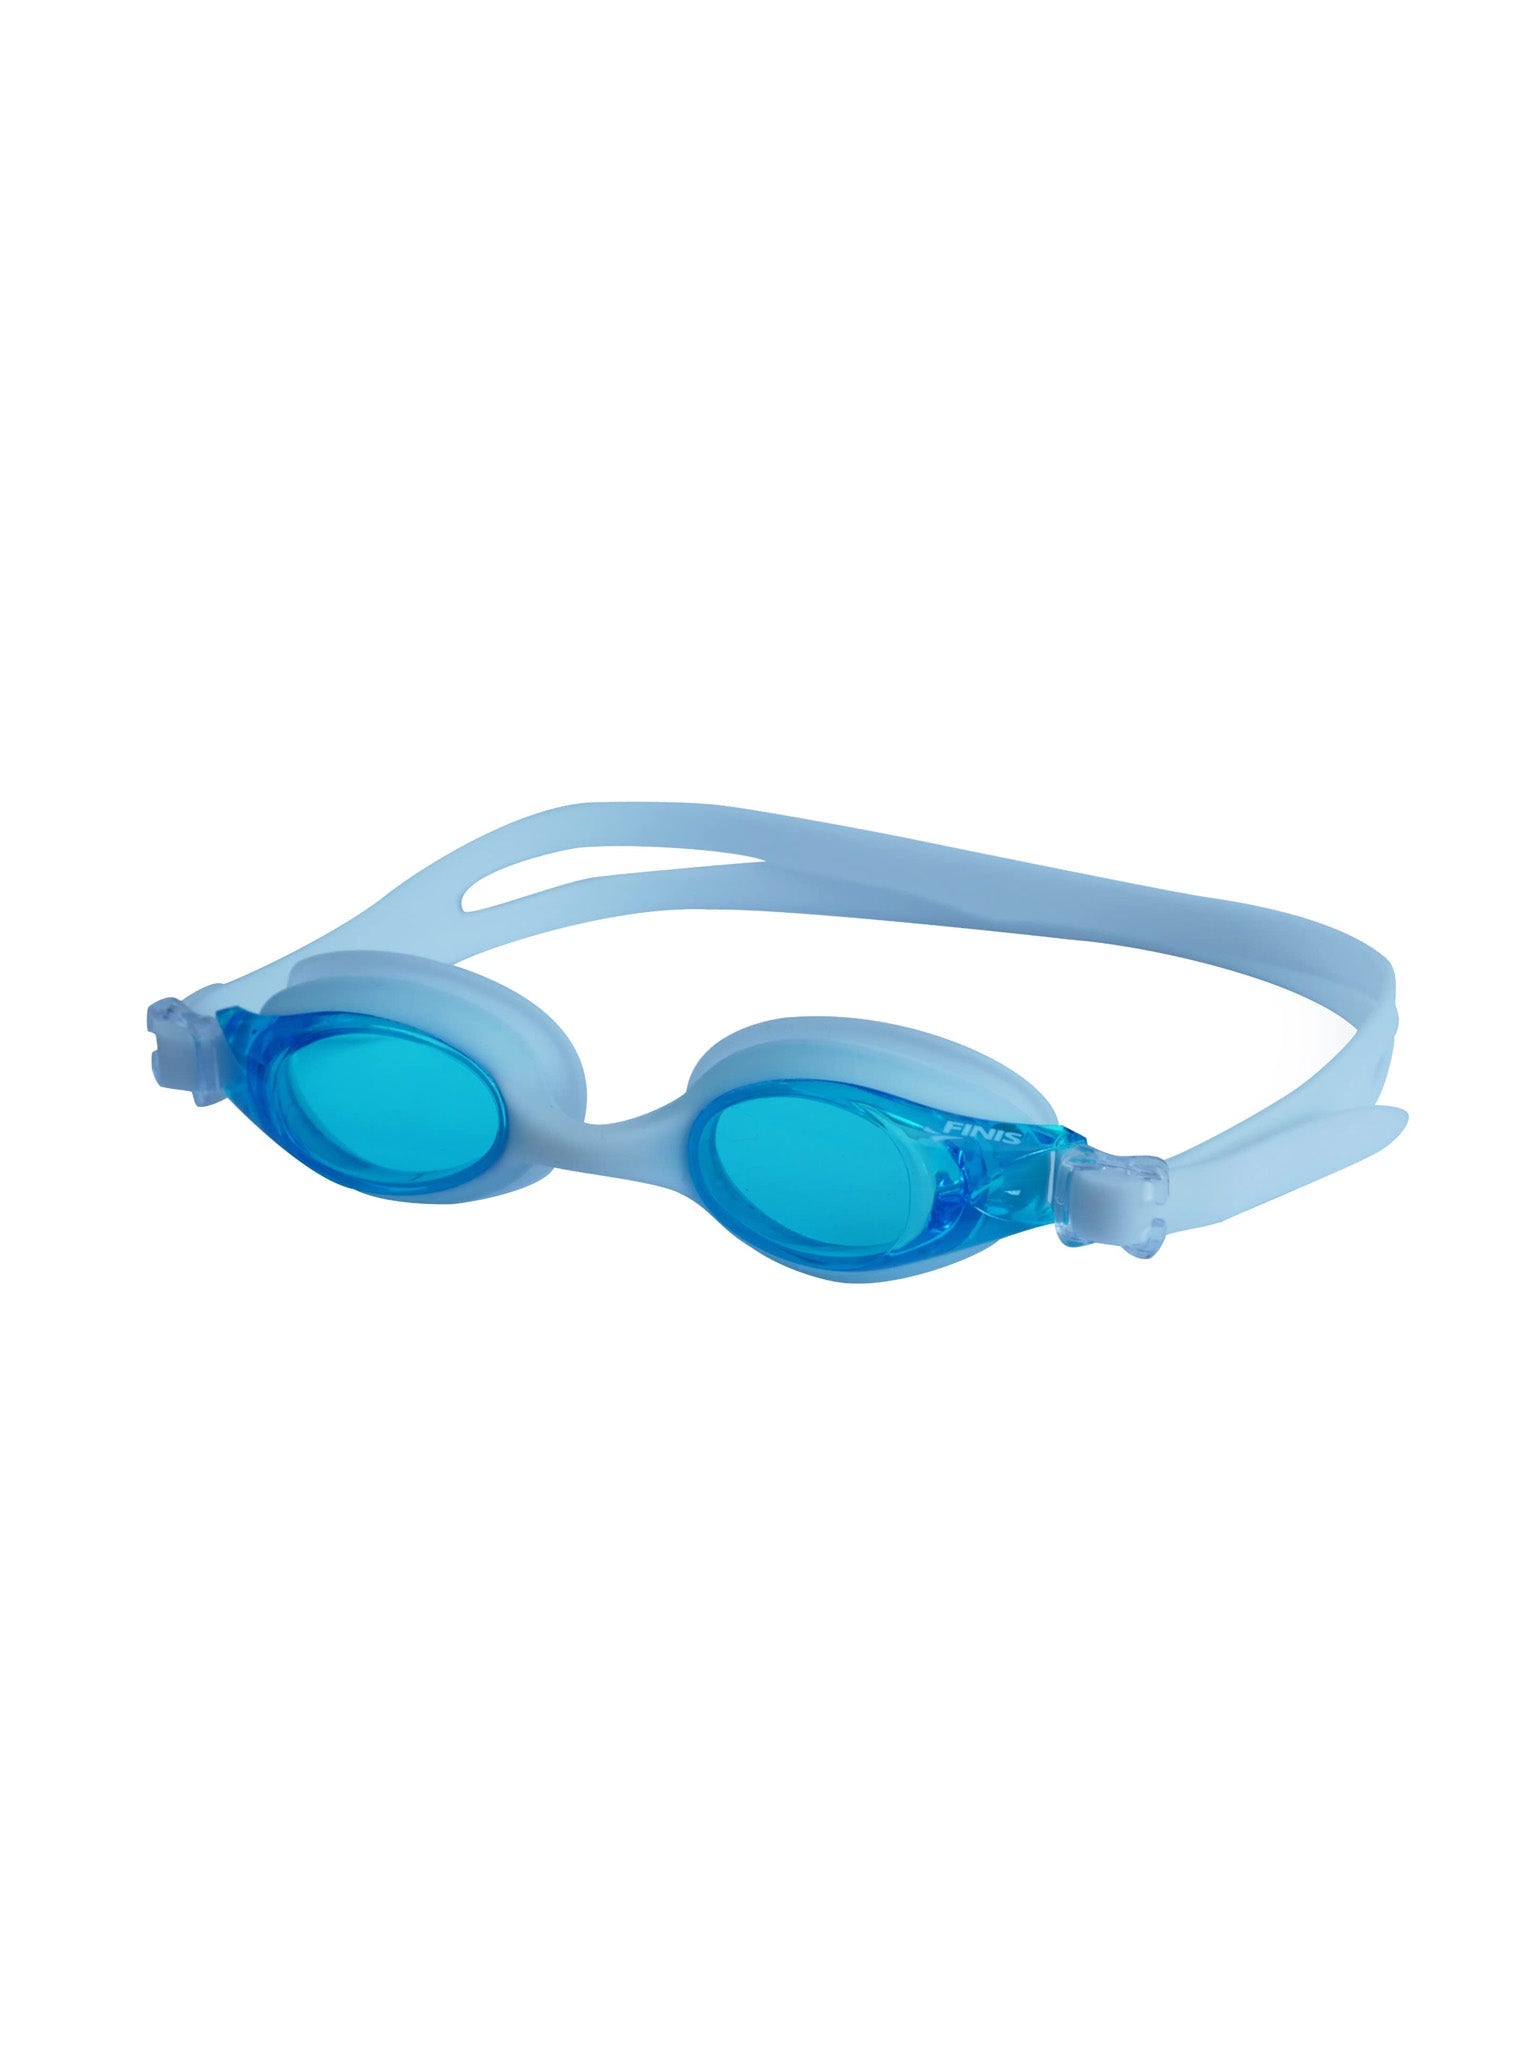 Lunettes de natation Flowglows pour enfant - Rose/Bleu